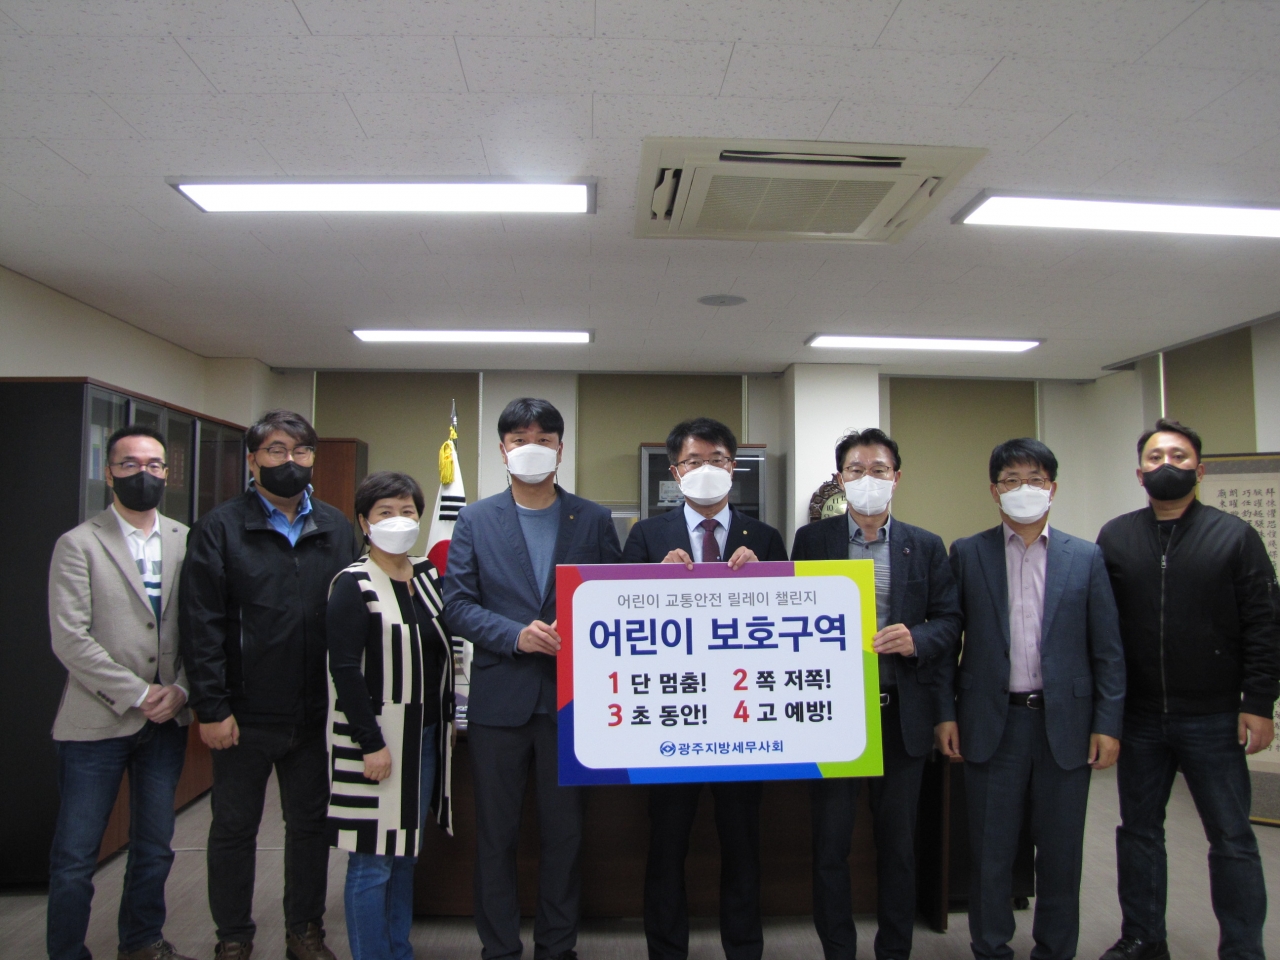 19일 유권규 광주지방세무사회장과 임원들이 광주세무사회관에서 '어린이 교통안전 릴레이 챌린지' 행사에 동참하고 있다